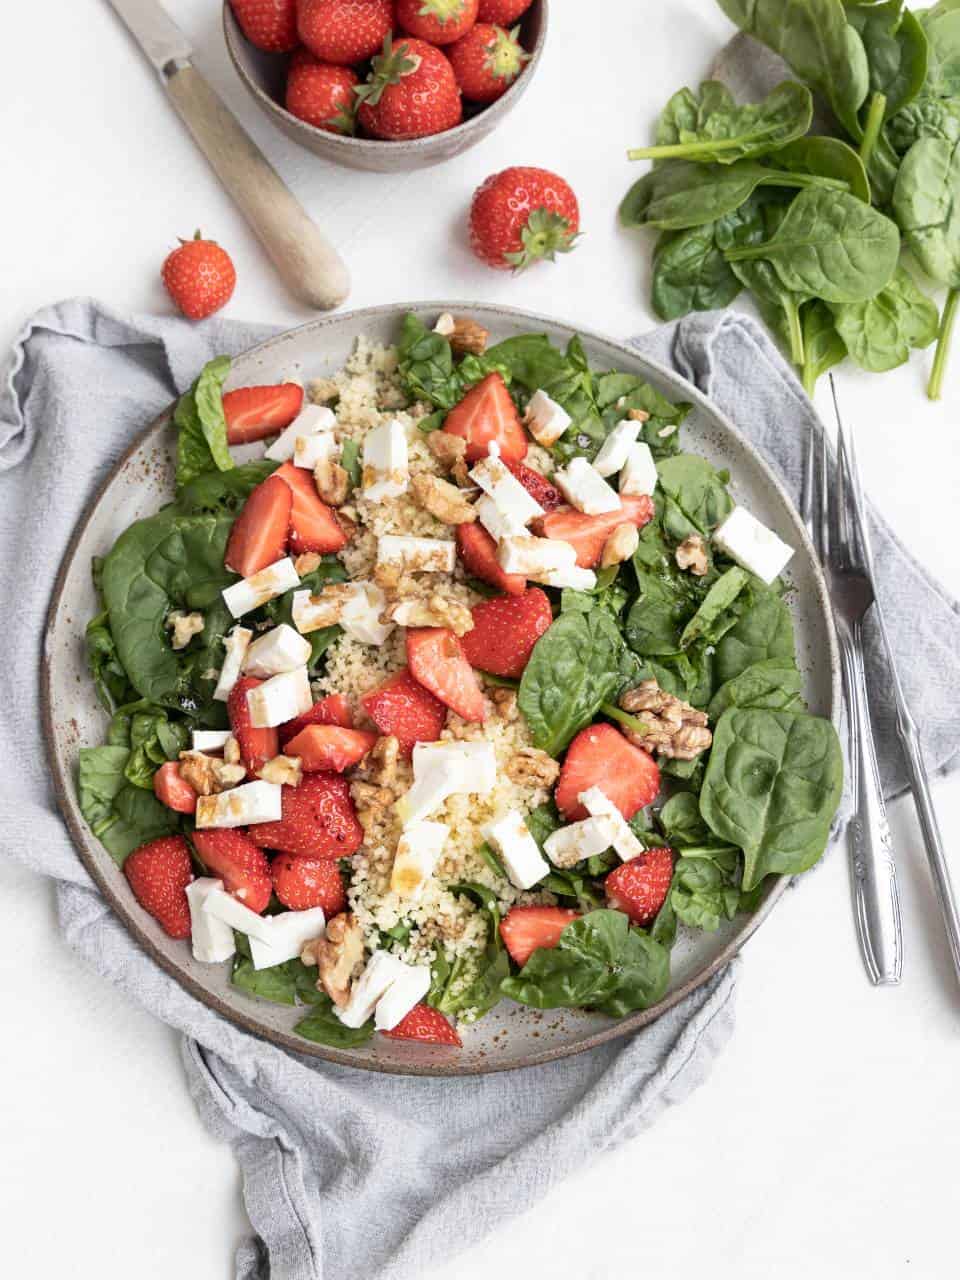 Salade met aardbeien, spinazie en feta